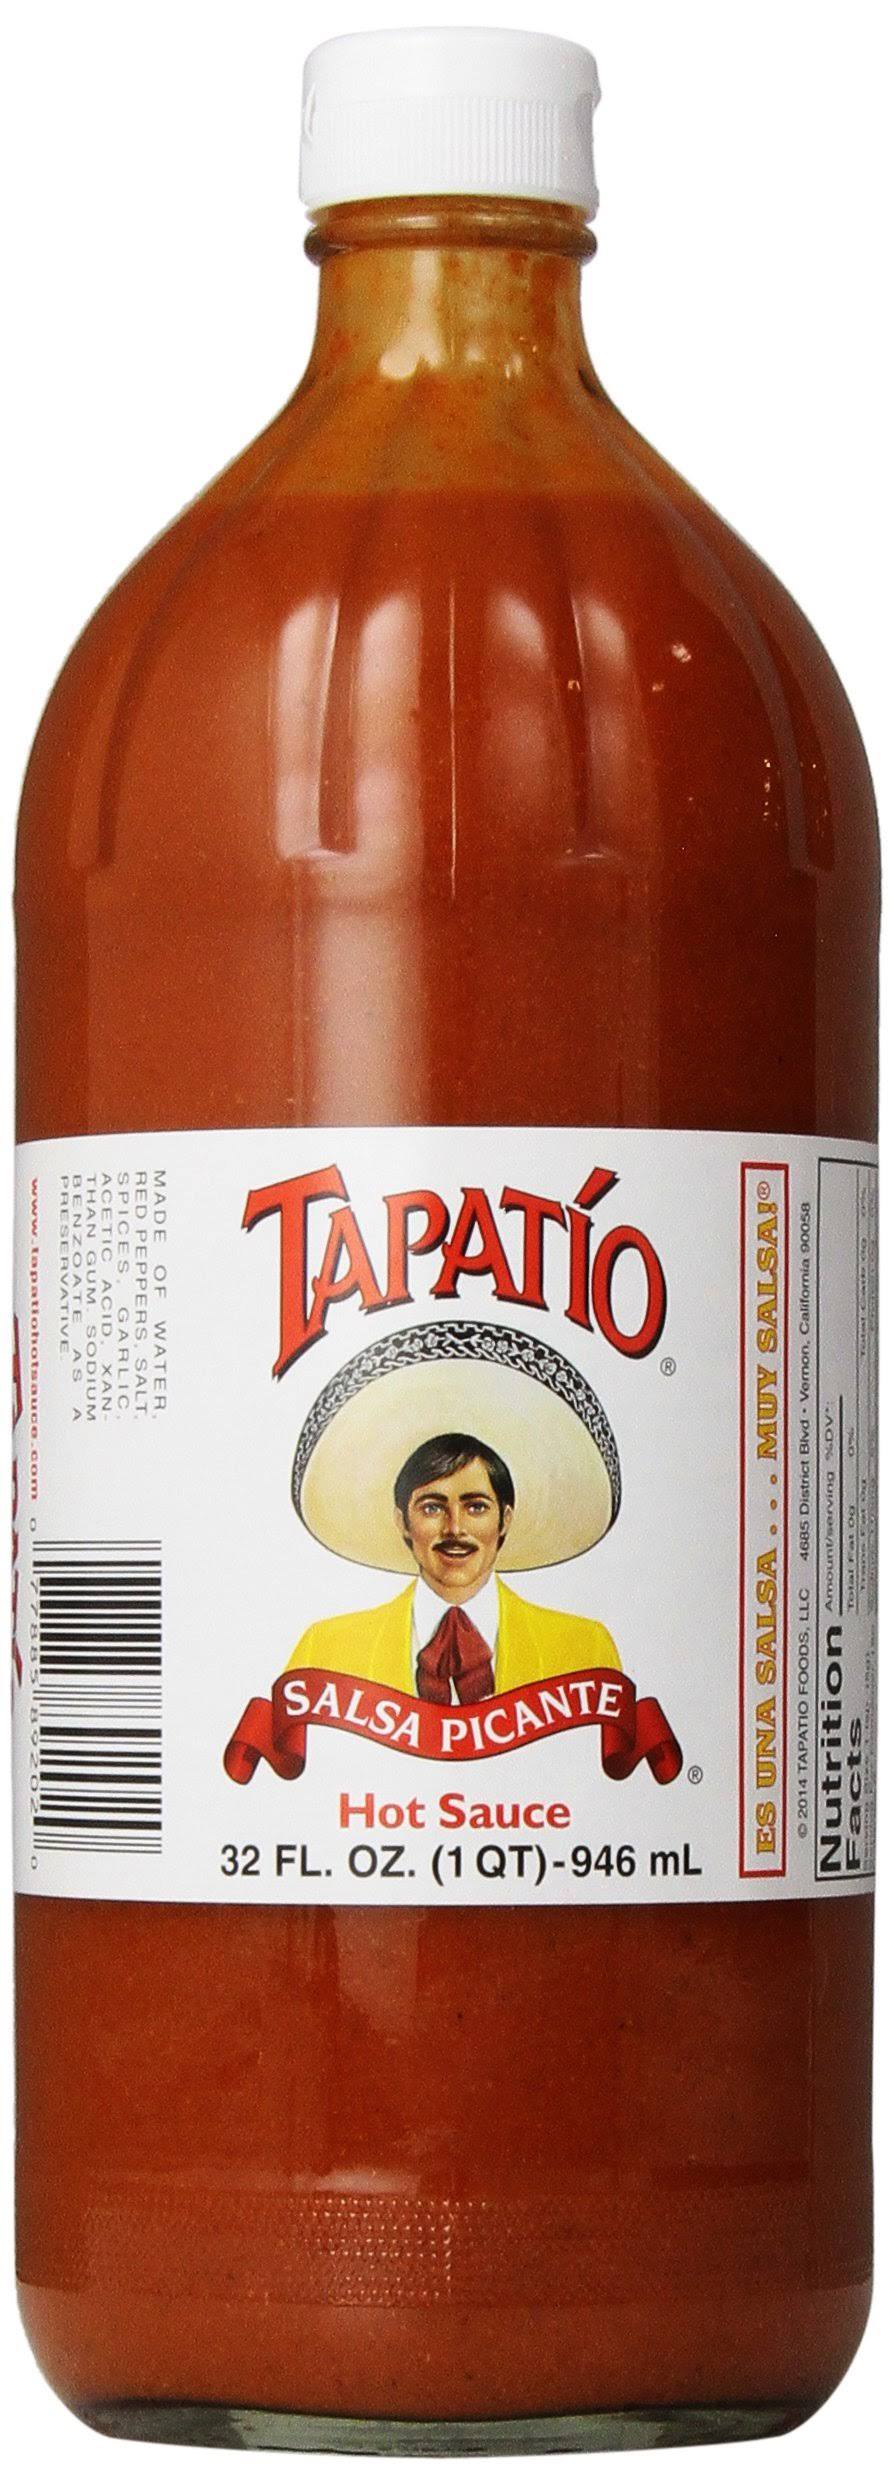 Tapatio Salsa Picante Hot Sauce - 32oz